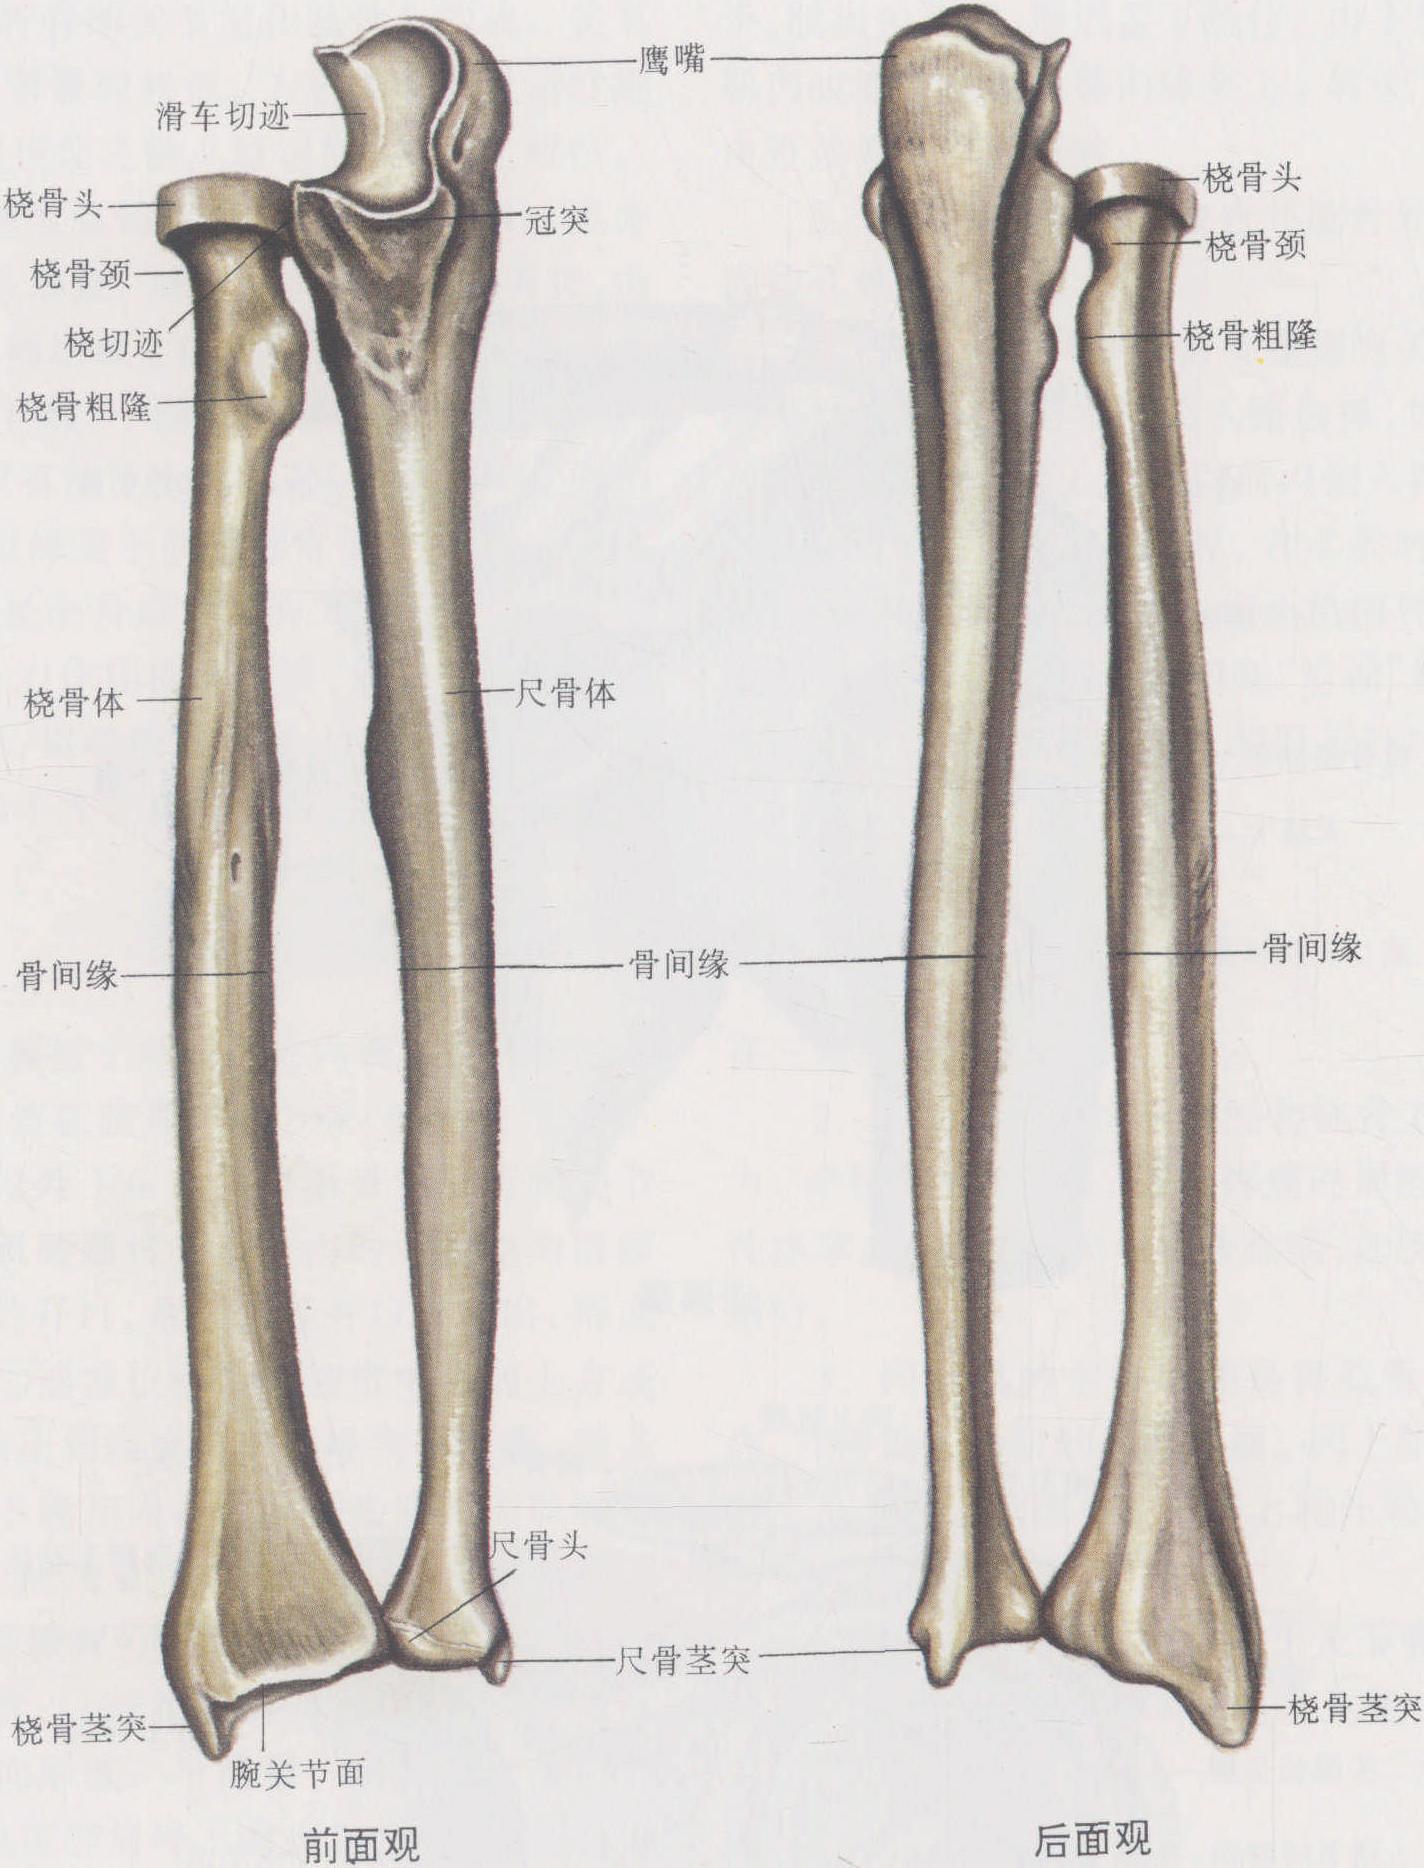 图7-37 尺骨和桡骨